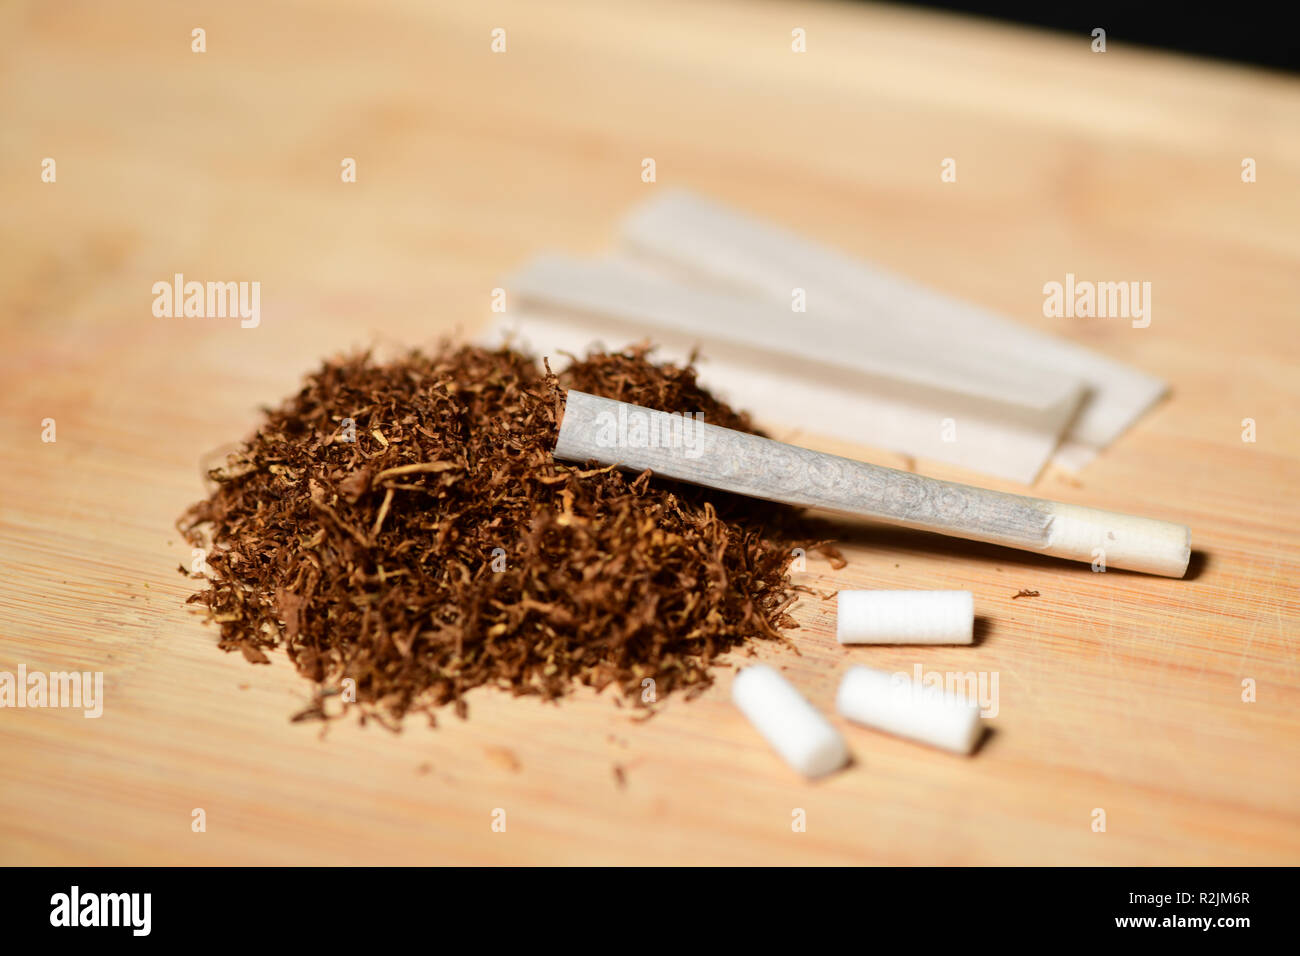 tabaco de liar, cenicero, boquillas y un cigarro encendido foto de Stock